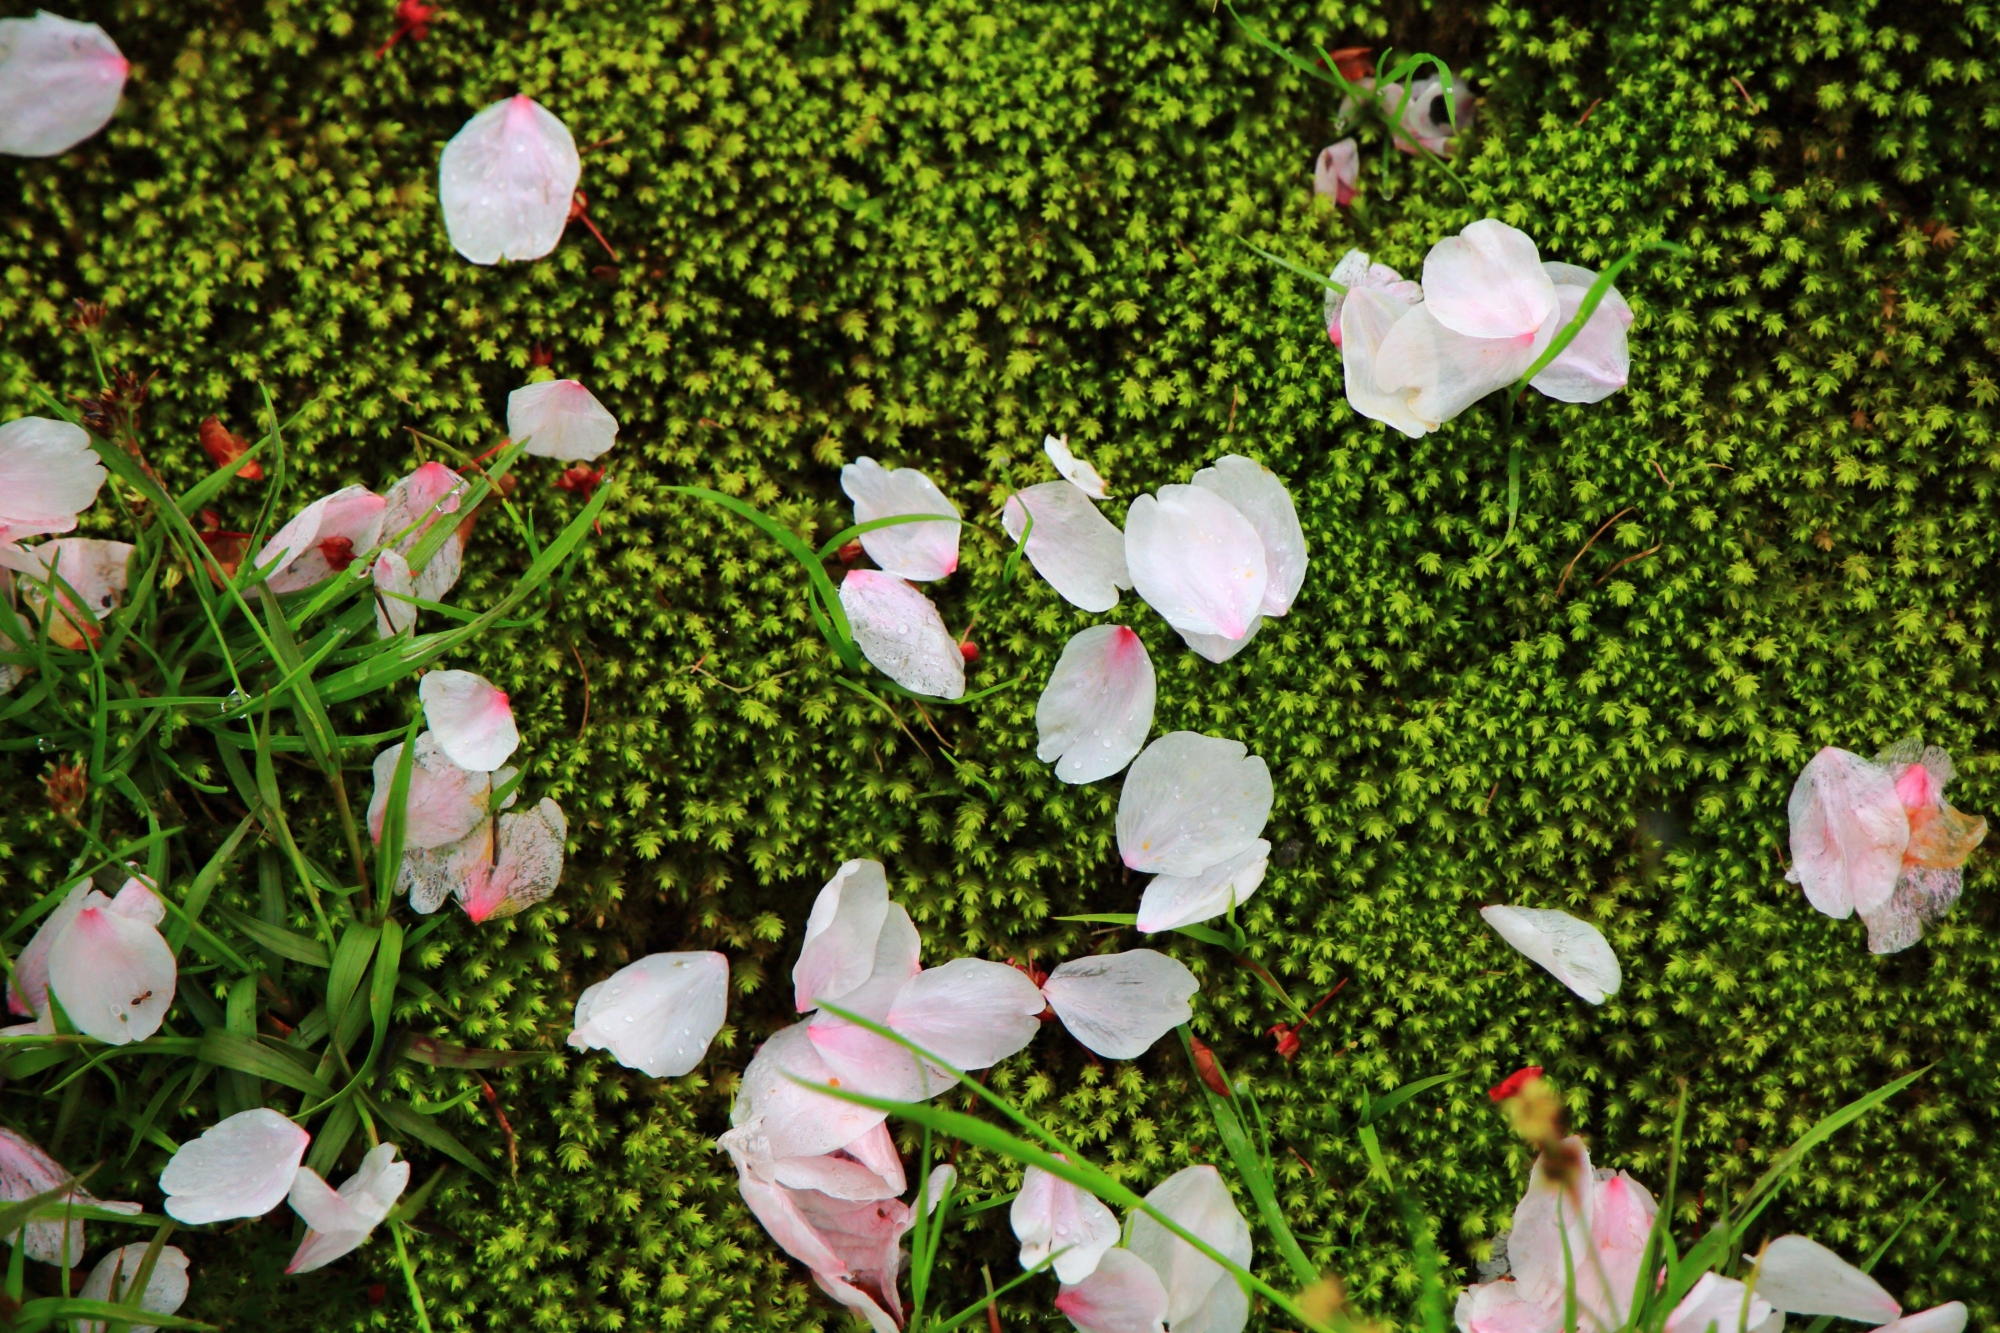 緑の苔に散った淡いピンクの花びら